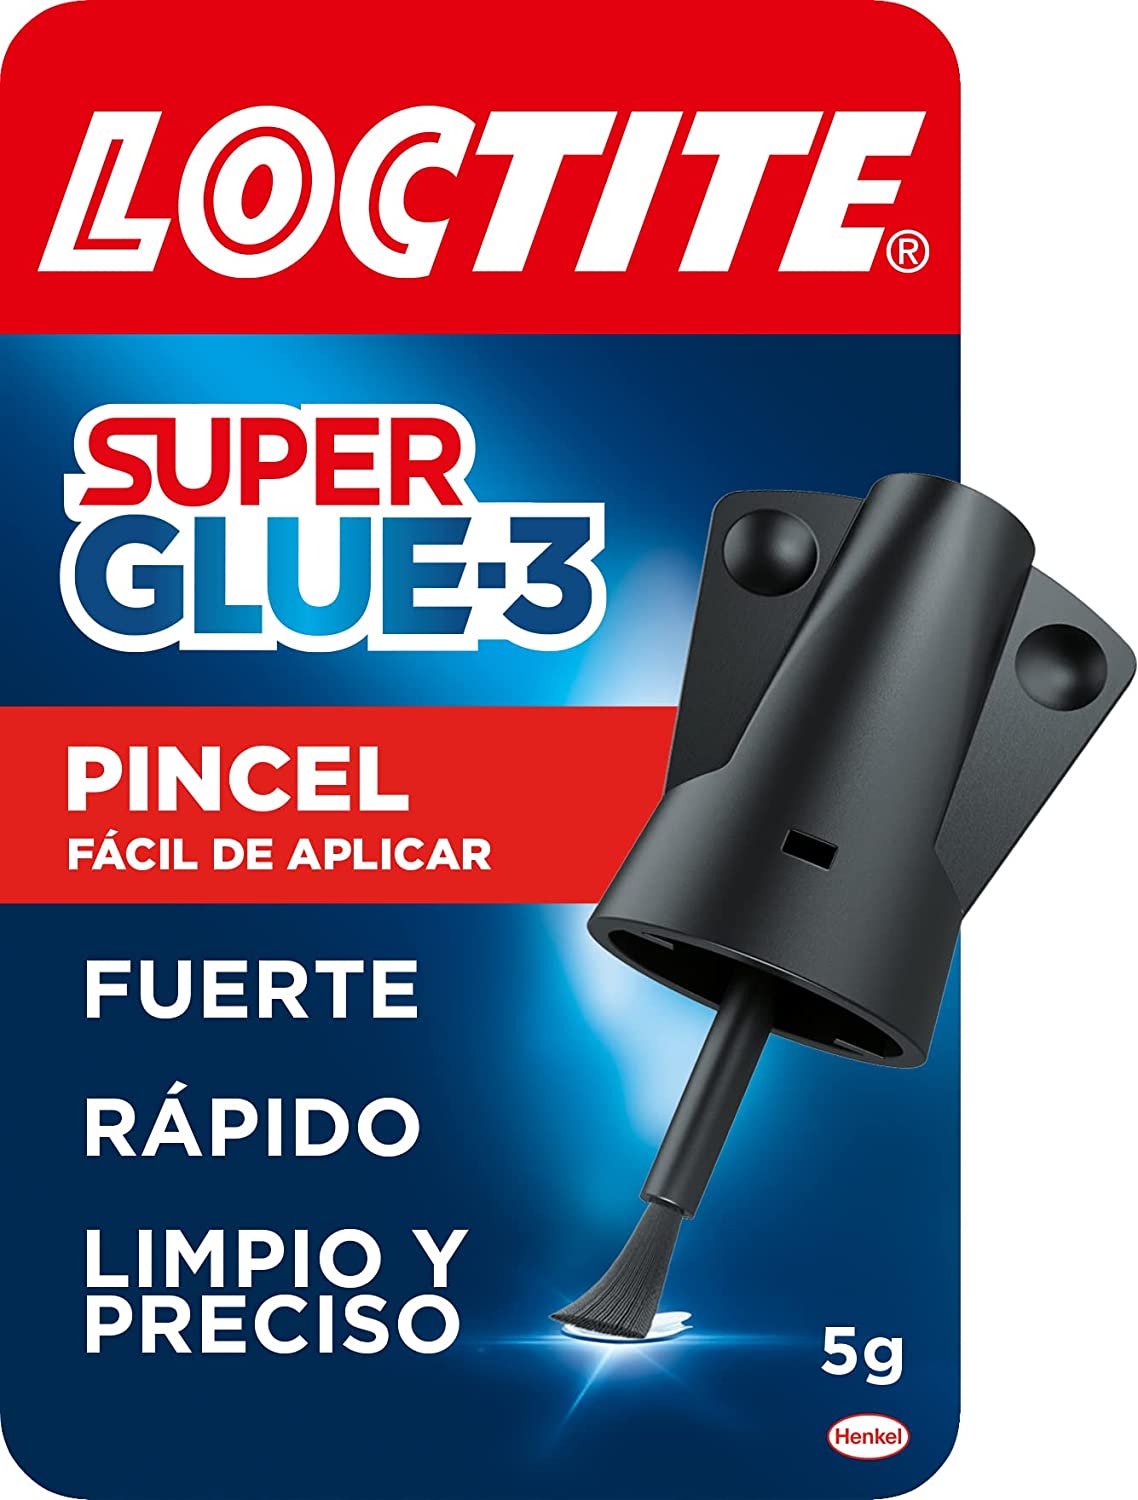 Loctite Super Glue-3 Pincel 5gr - Adhesivo Universal Triple Resistencia - Fuerza y Uso Instantaneo -